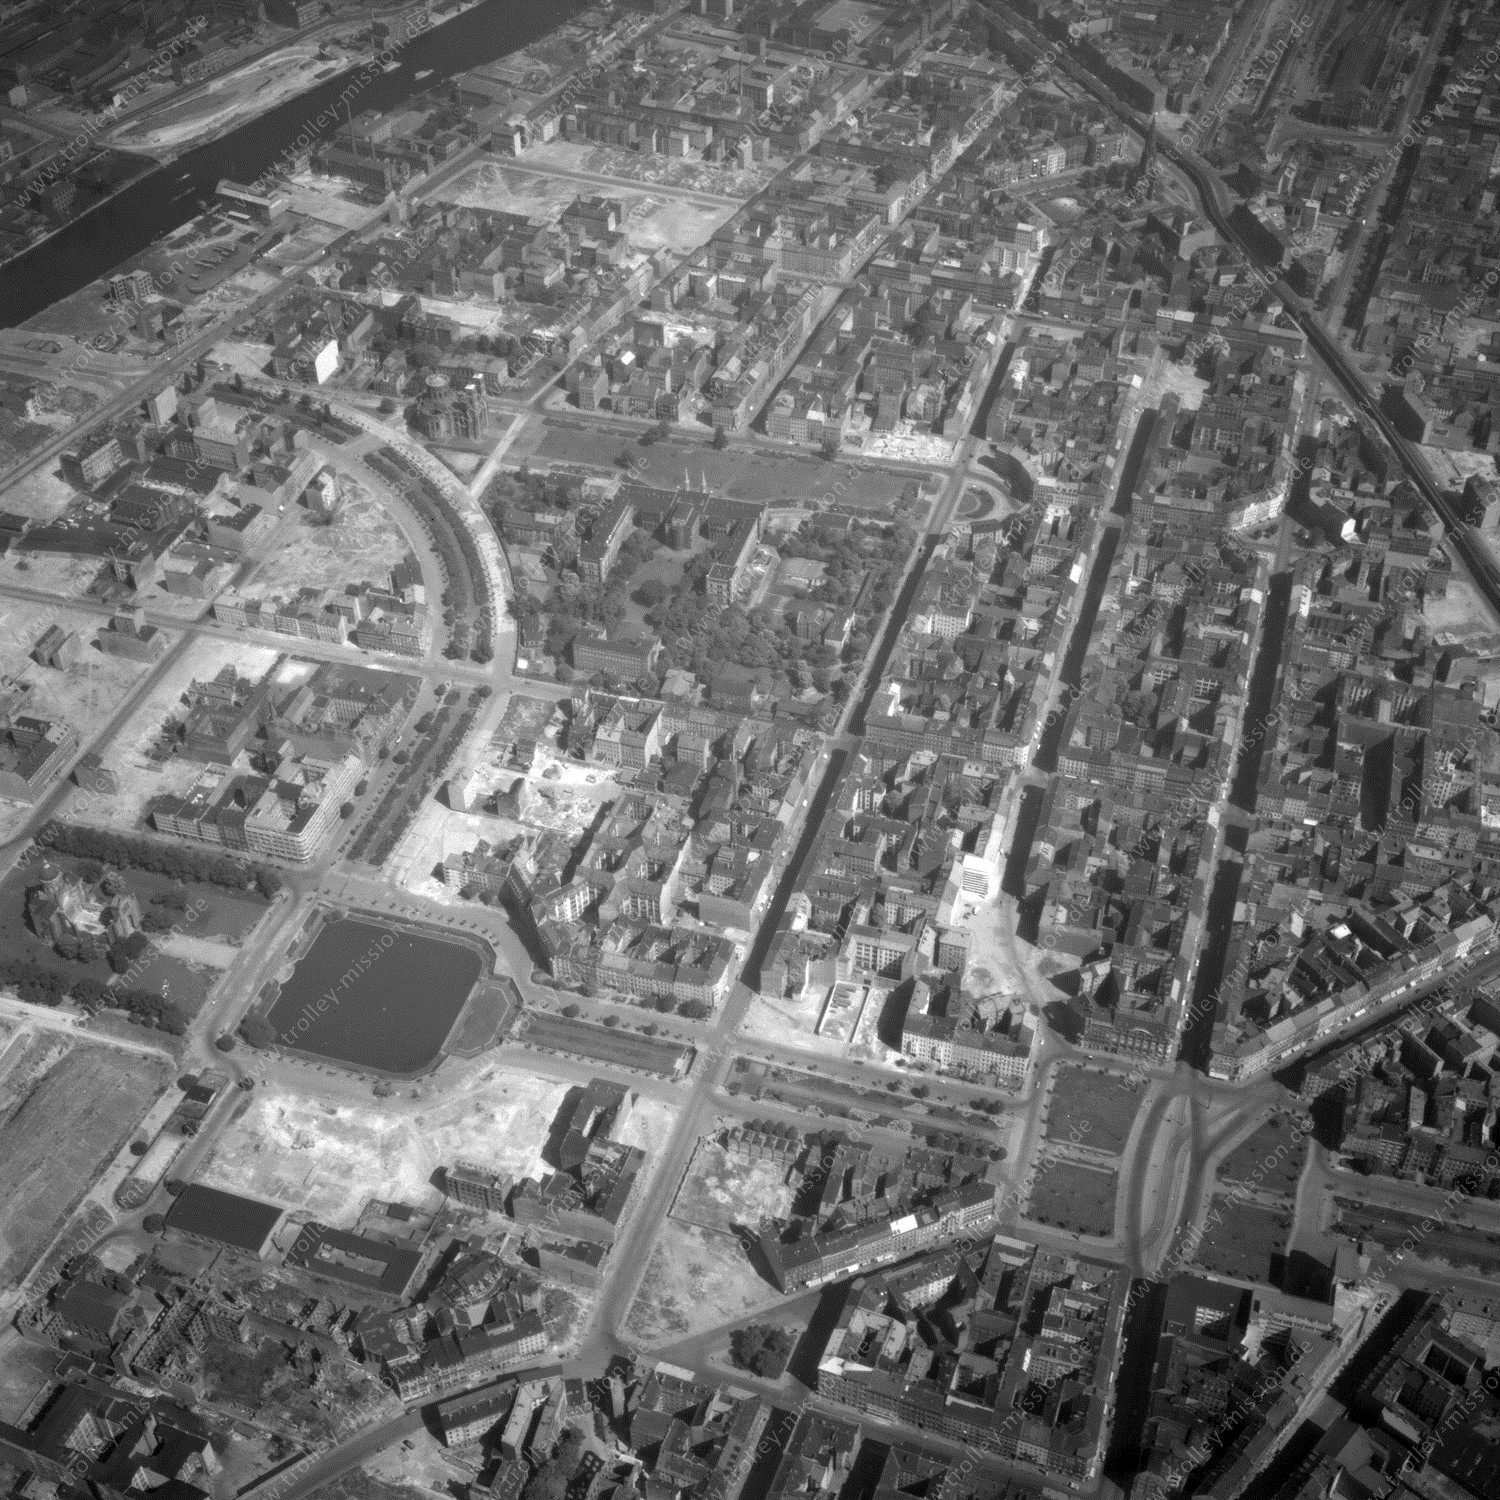 Alte Fotos und Luftbilder von Berlin - Luftbildaufnahme Nr. 07 - Historische Luftaufnahmen von West-Berlin aus dem Jahr 1954 - Flugstrecke Lima